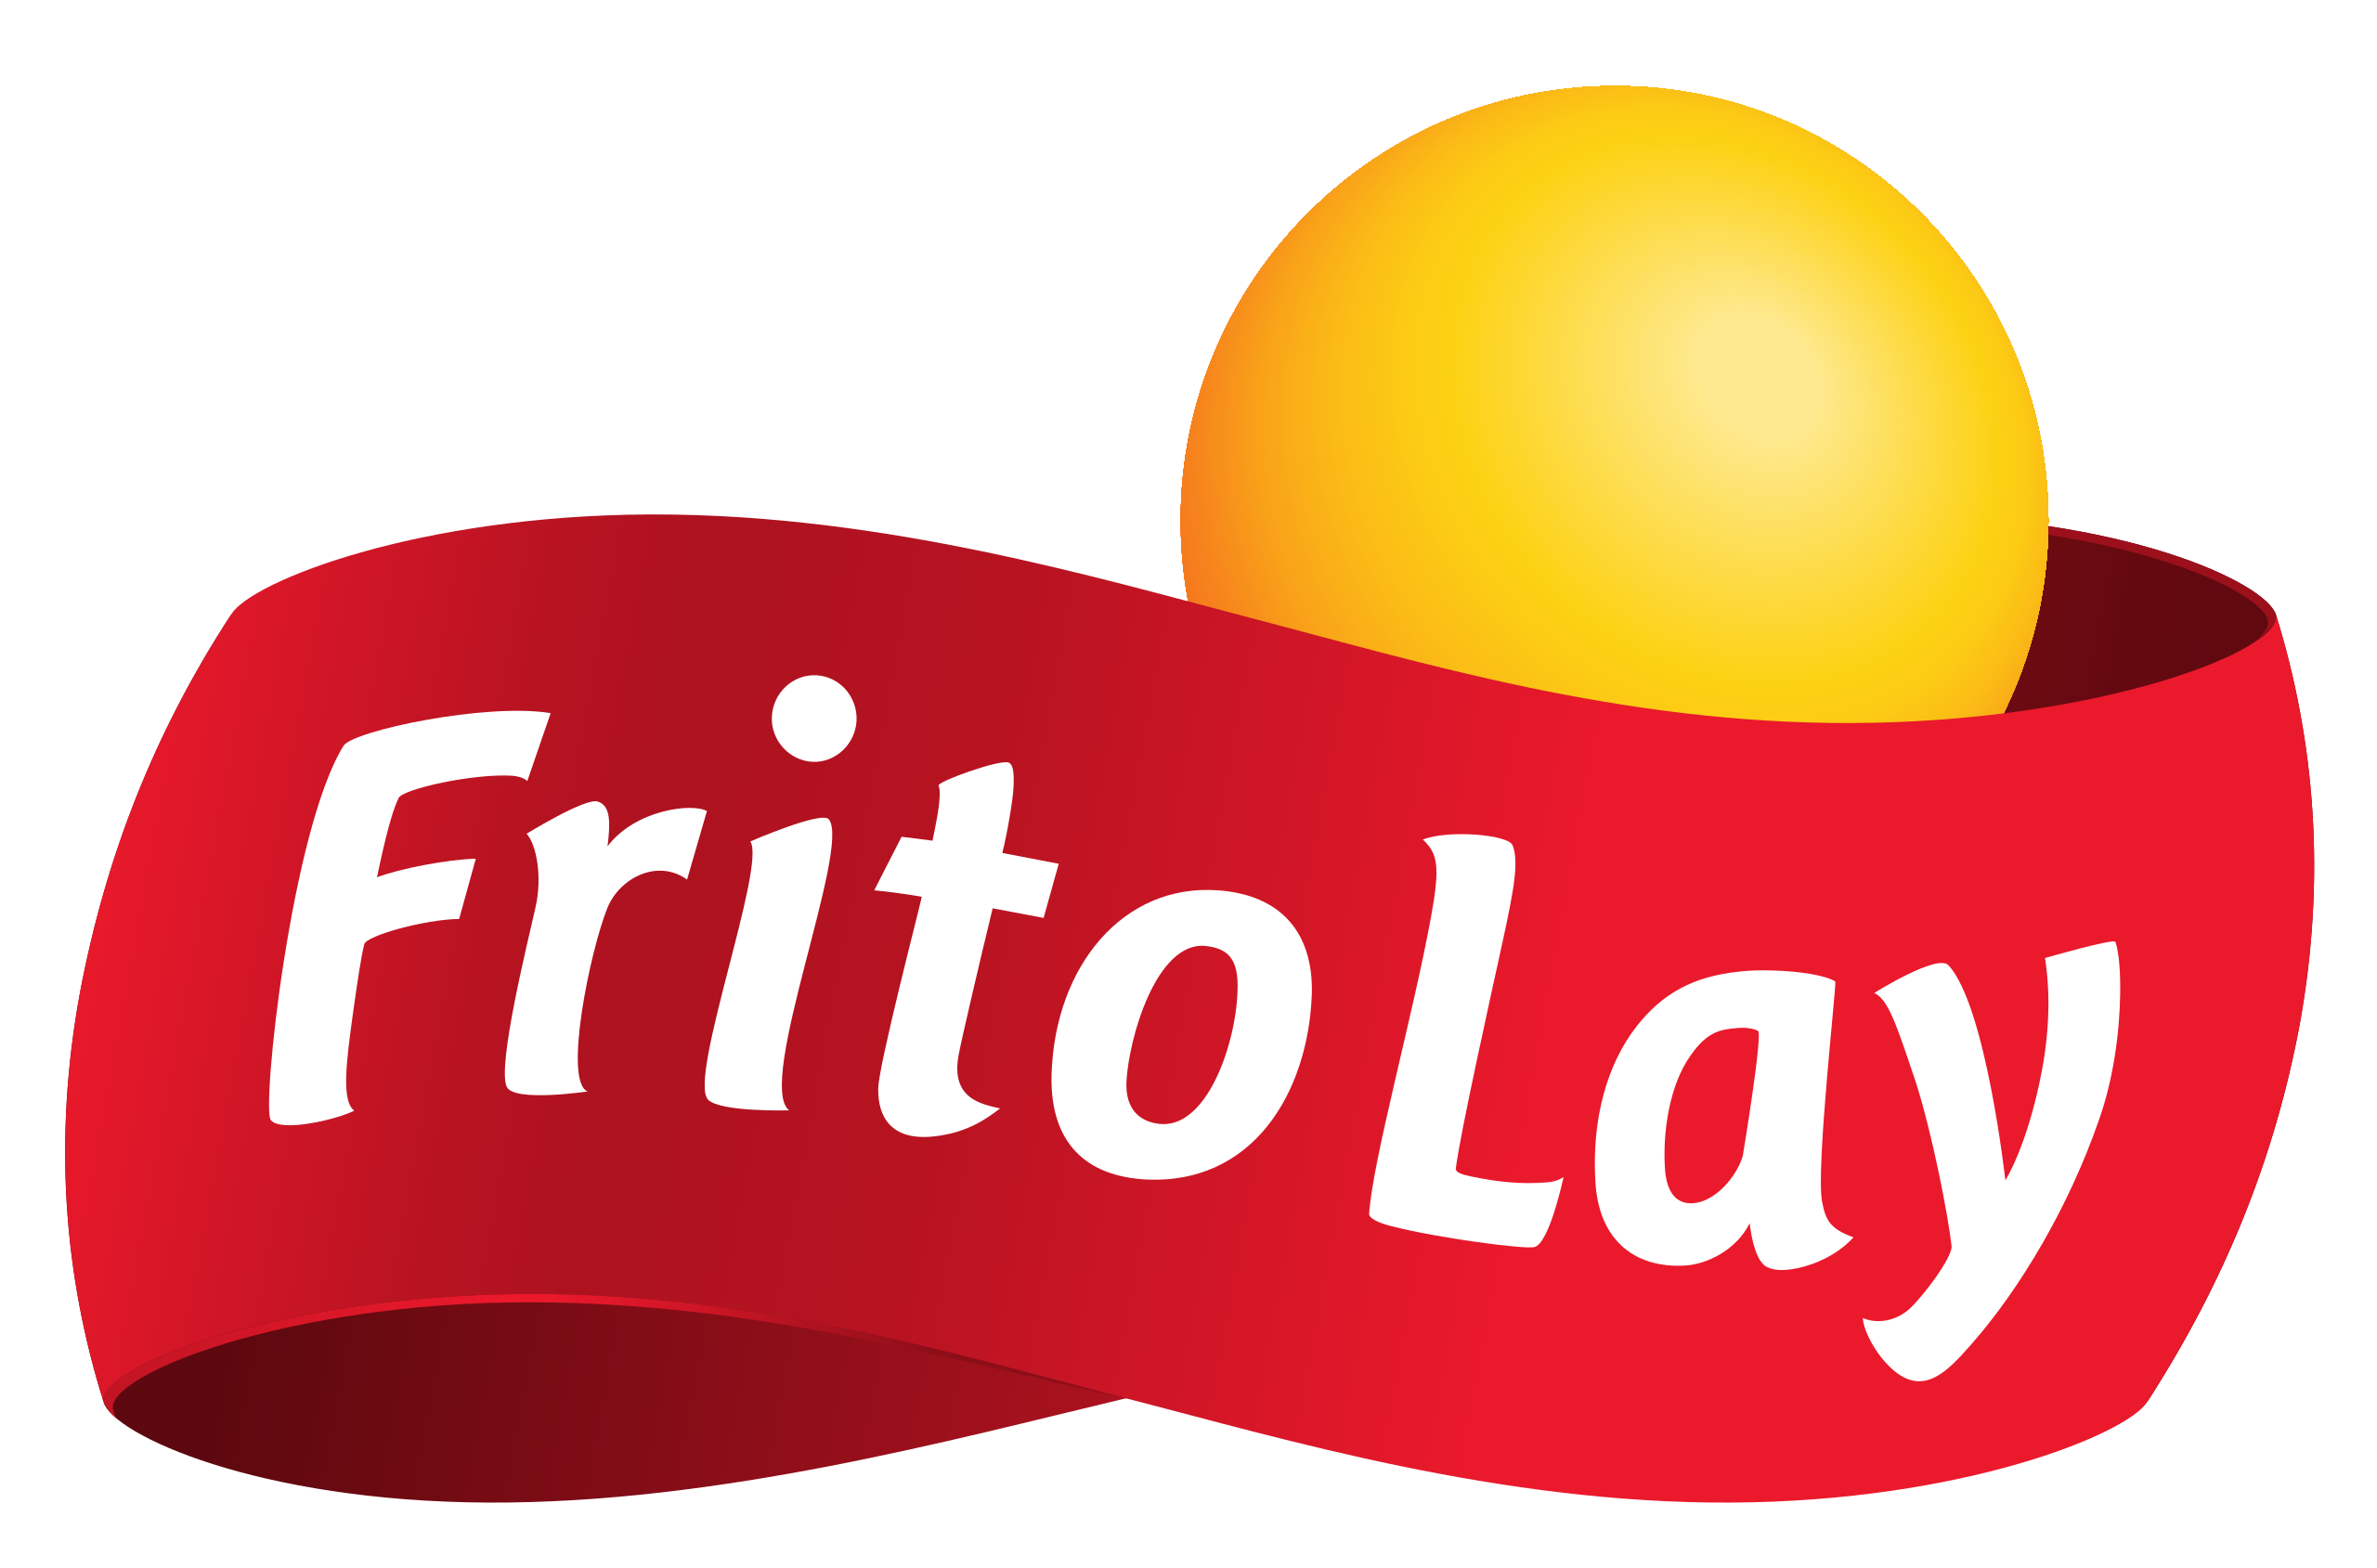 Frito Lay company logo